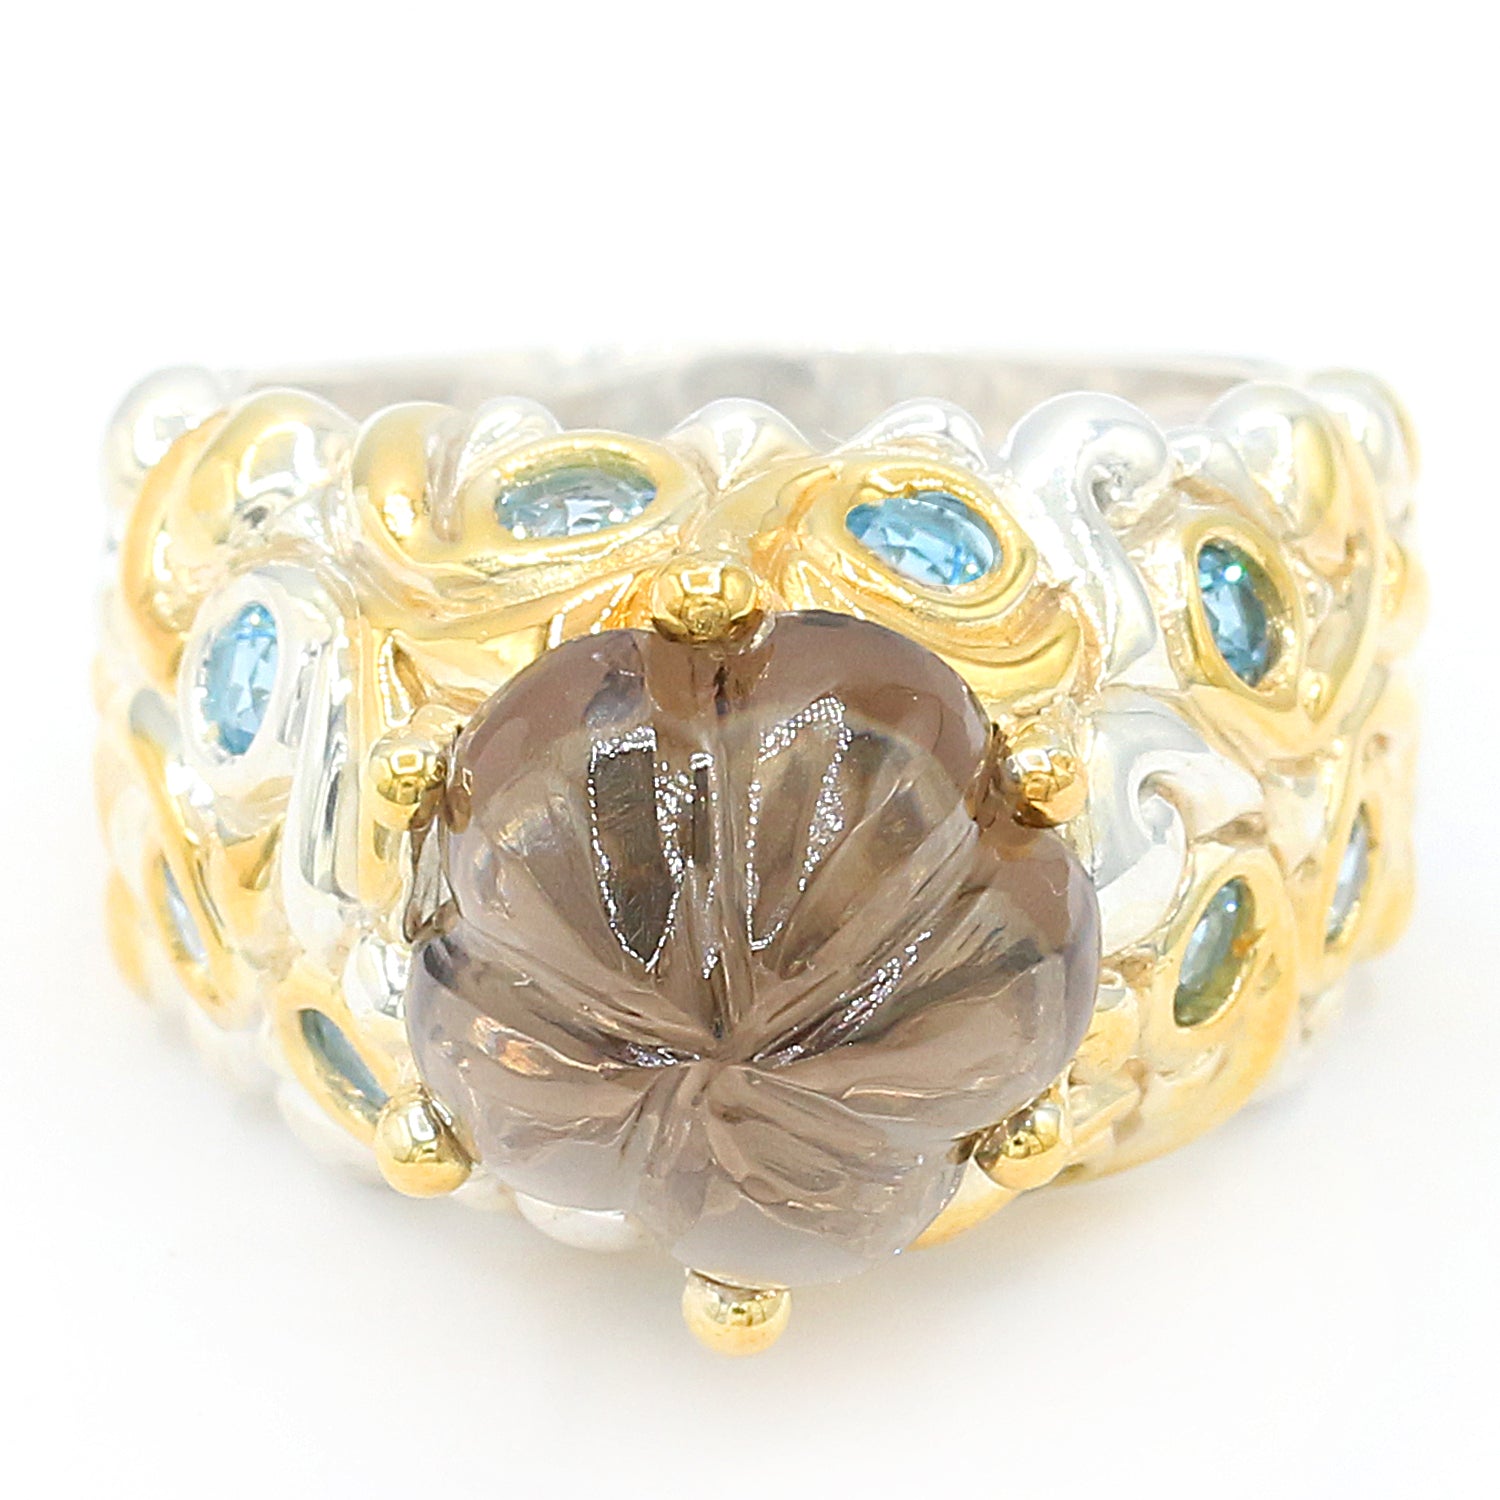 Michael's Originals One-of-a-kind Carved Flower Smoky Quartz & Tanzanian Aquamarine Ring